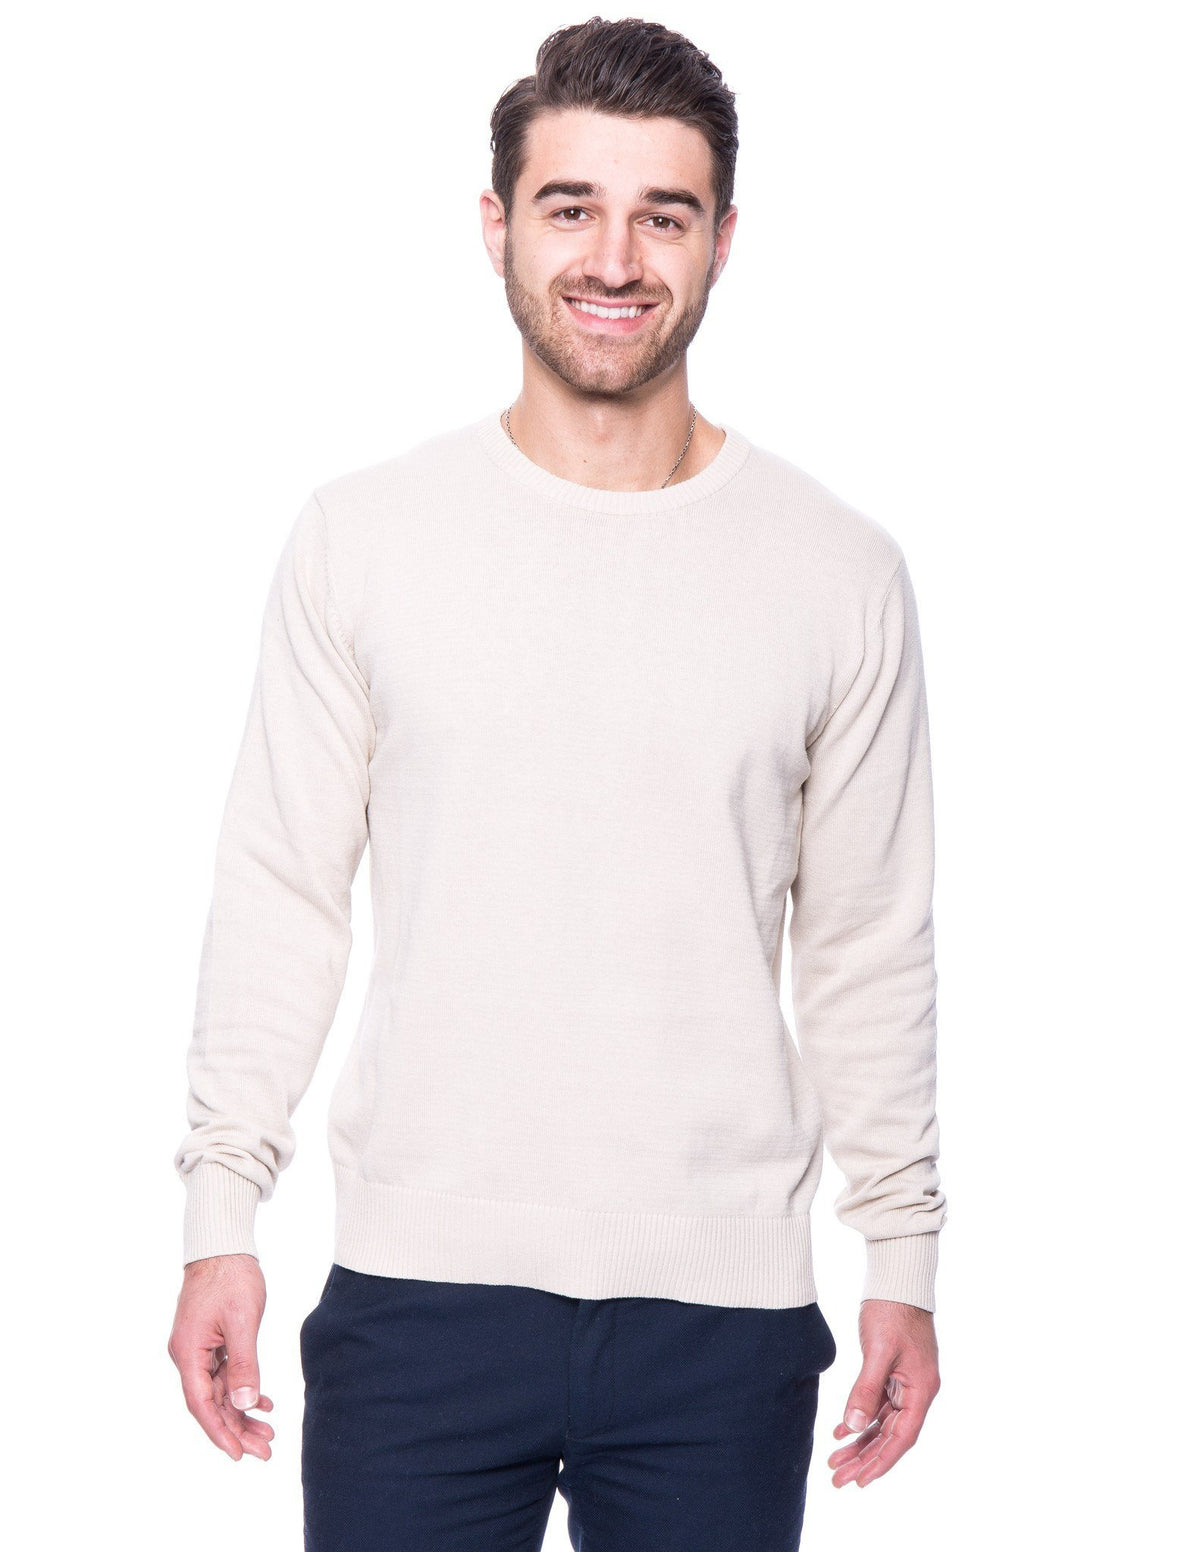 Men's 100% Cotton Crew Neck Sweater - Stone